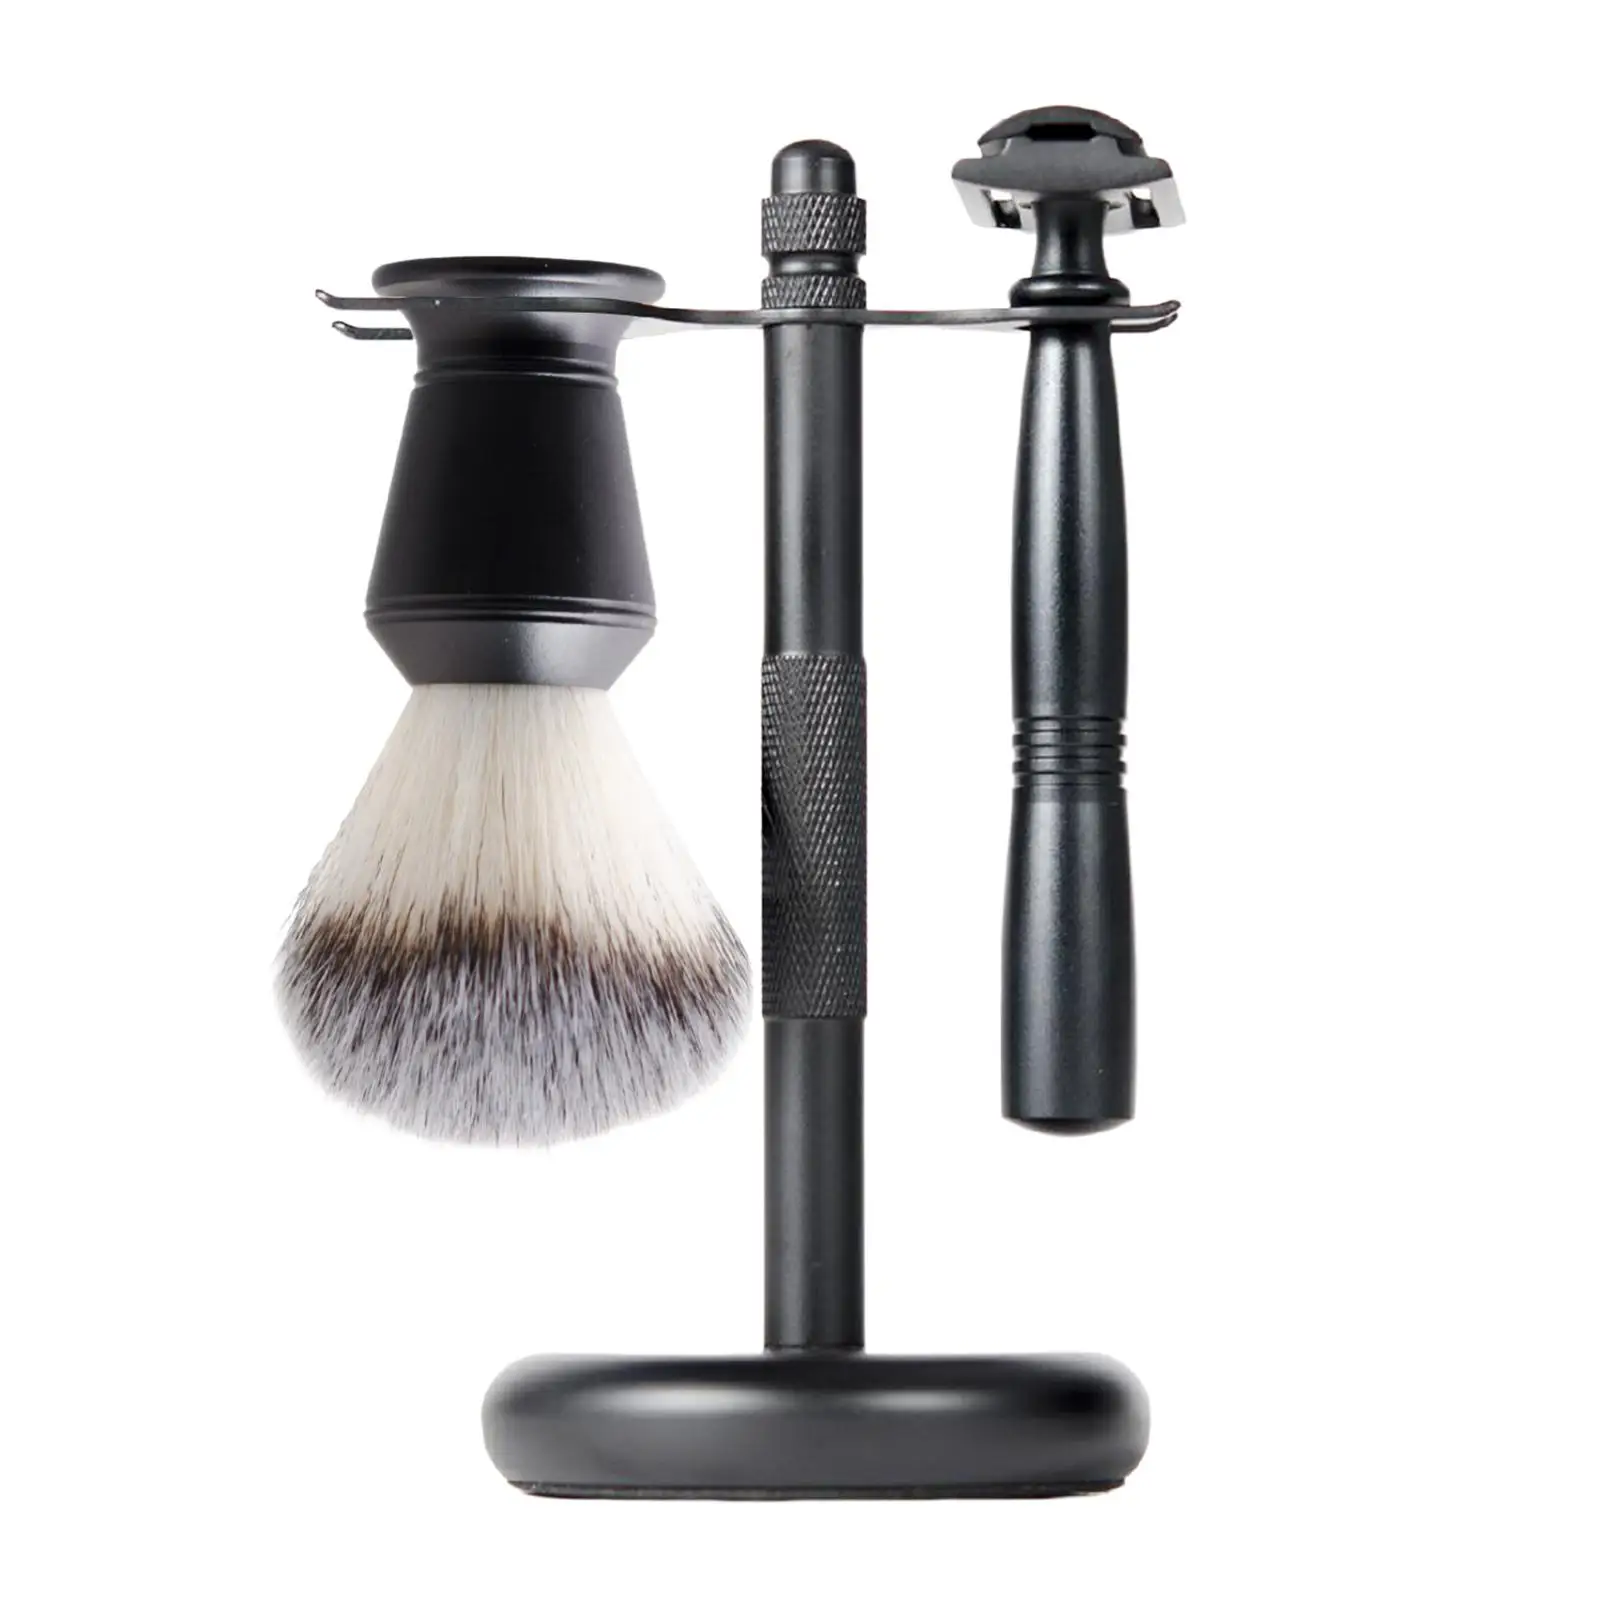 3x Shaving Kit Black Color Shaving Stand Shaving Brush Set Includes Edge Razor, Holder, Shaving Brush Luxury Father`s Day Gifts